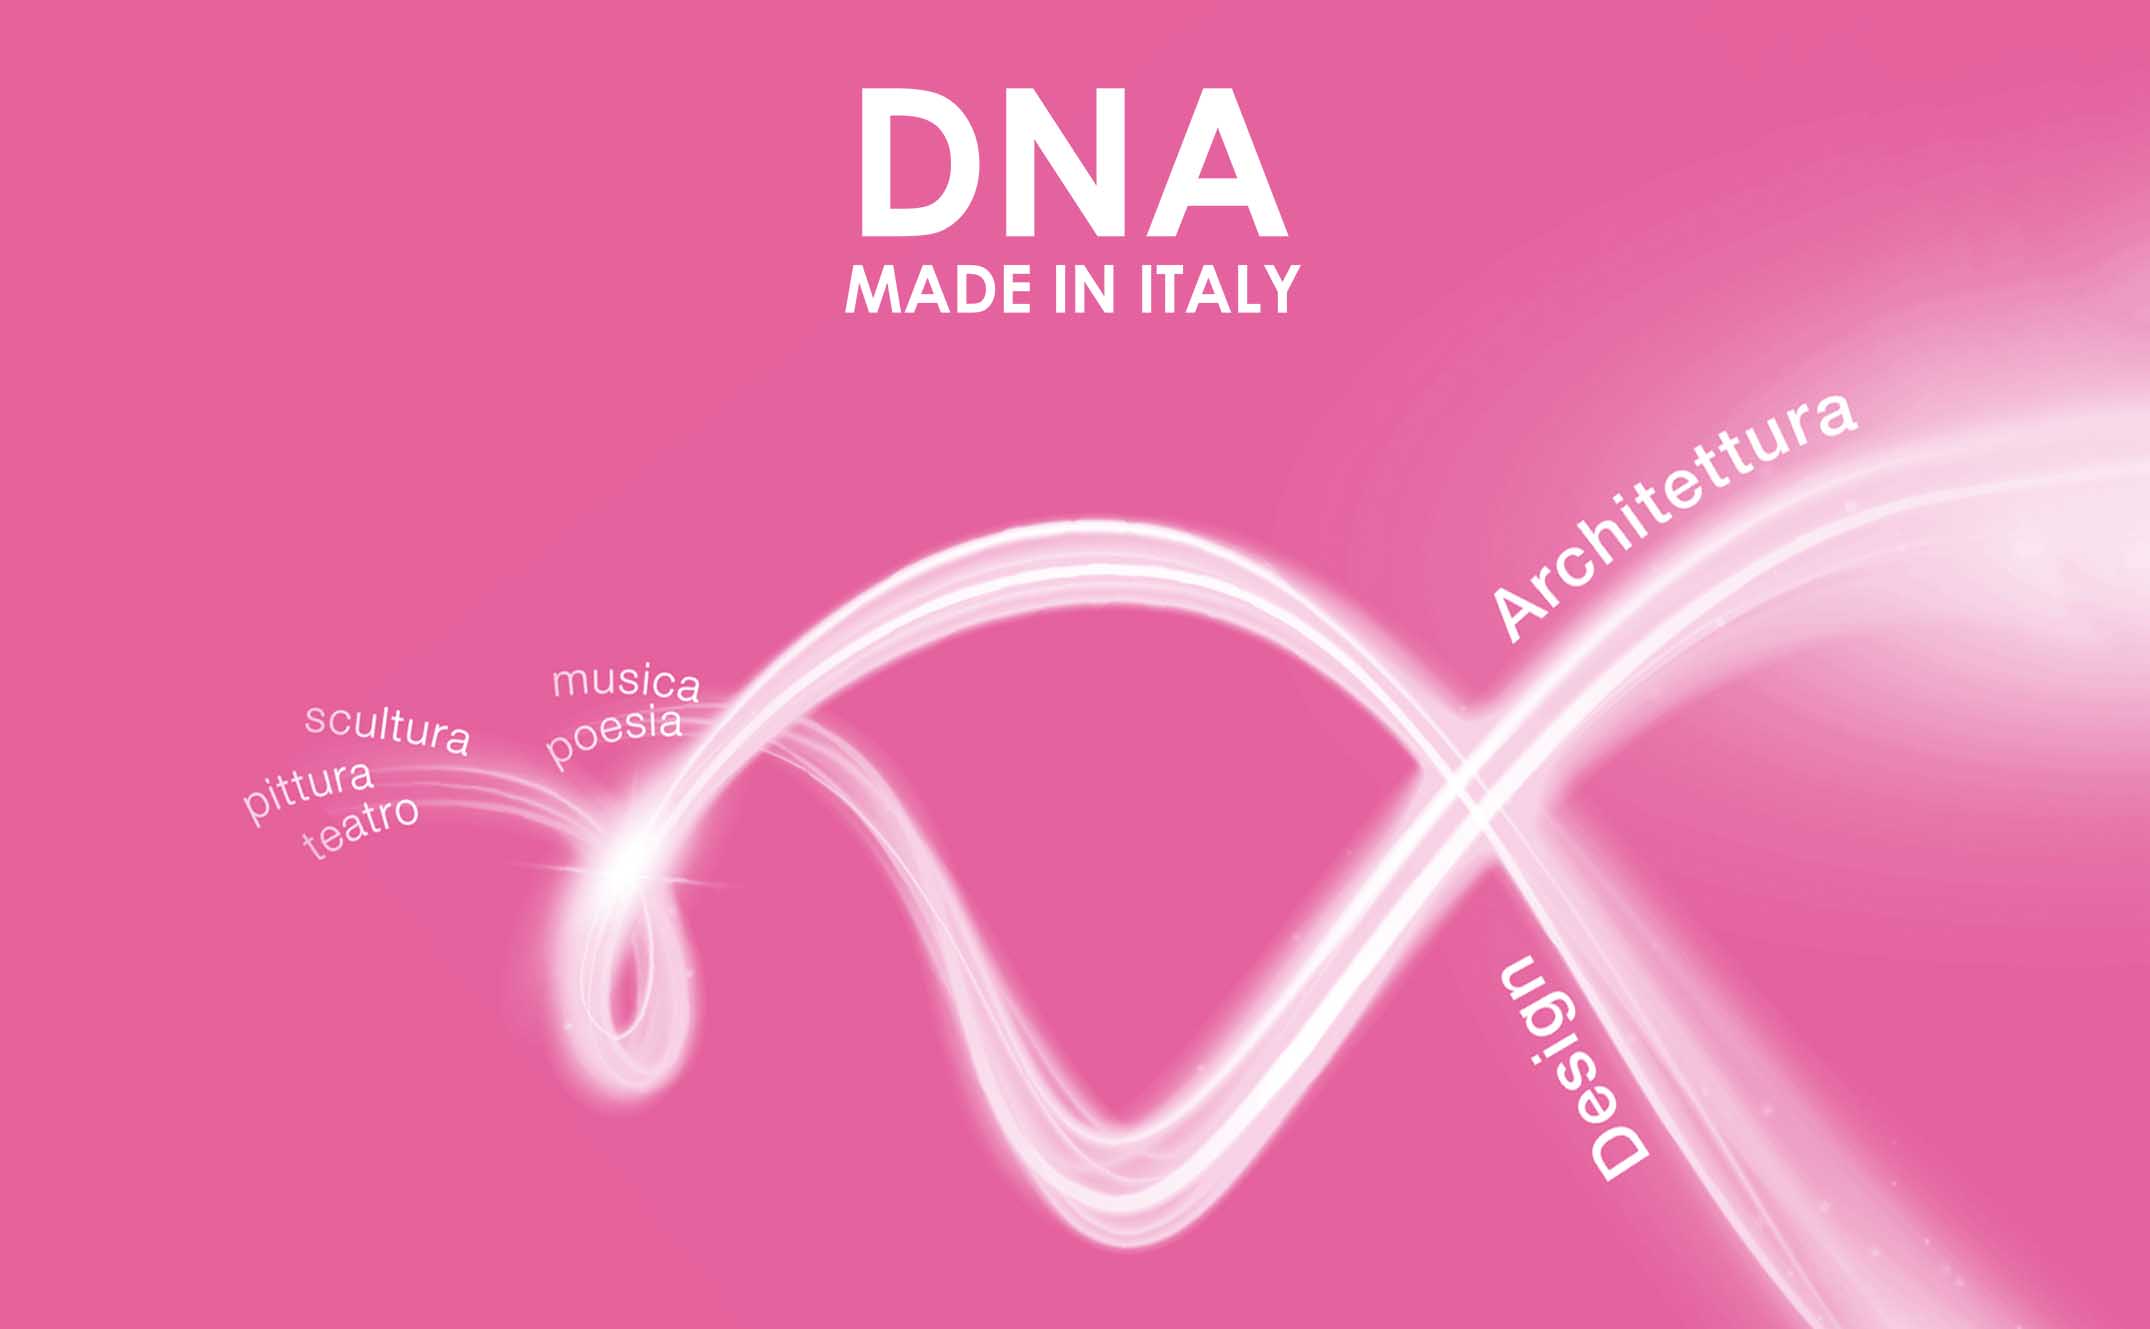 DNA MADE IN ITALY ITALIAN VALUES POLETTI